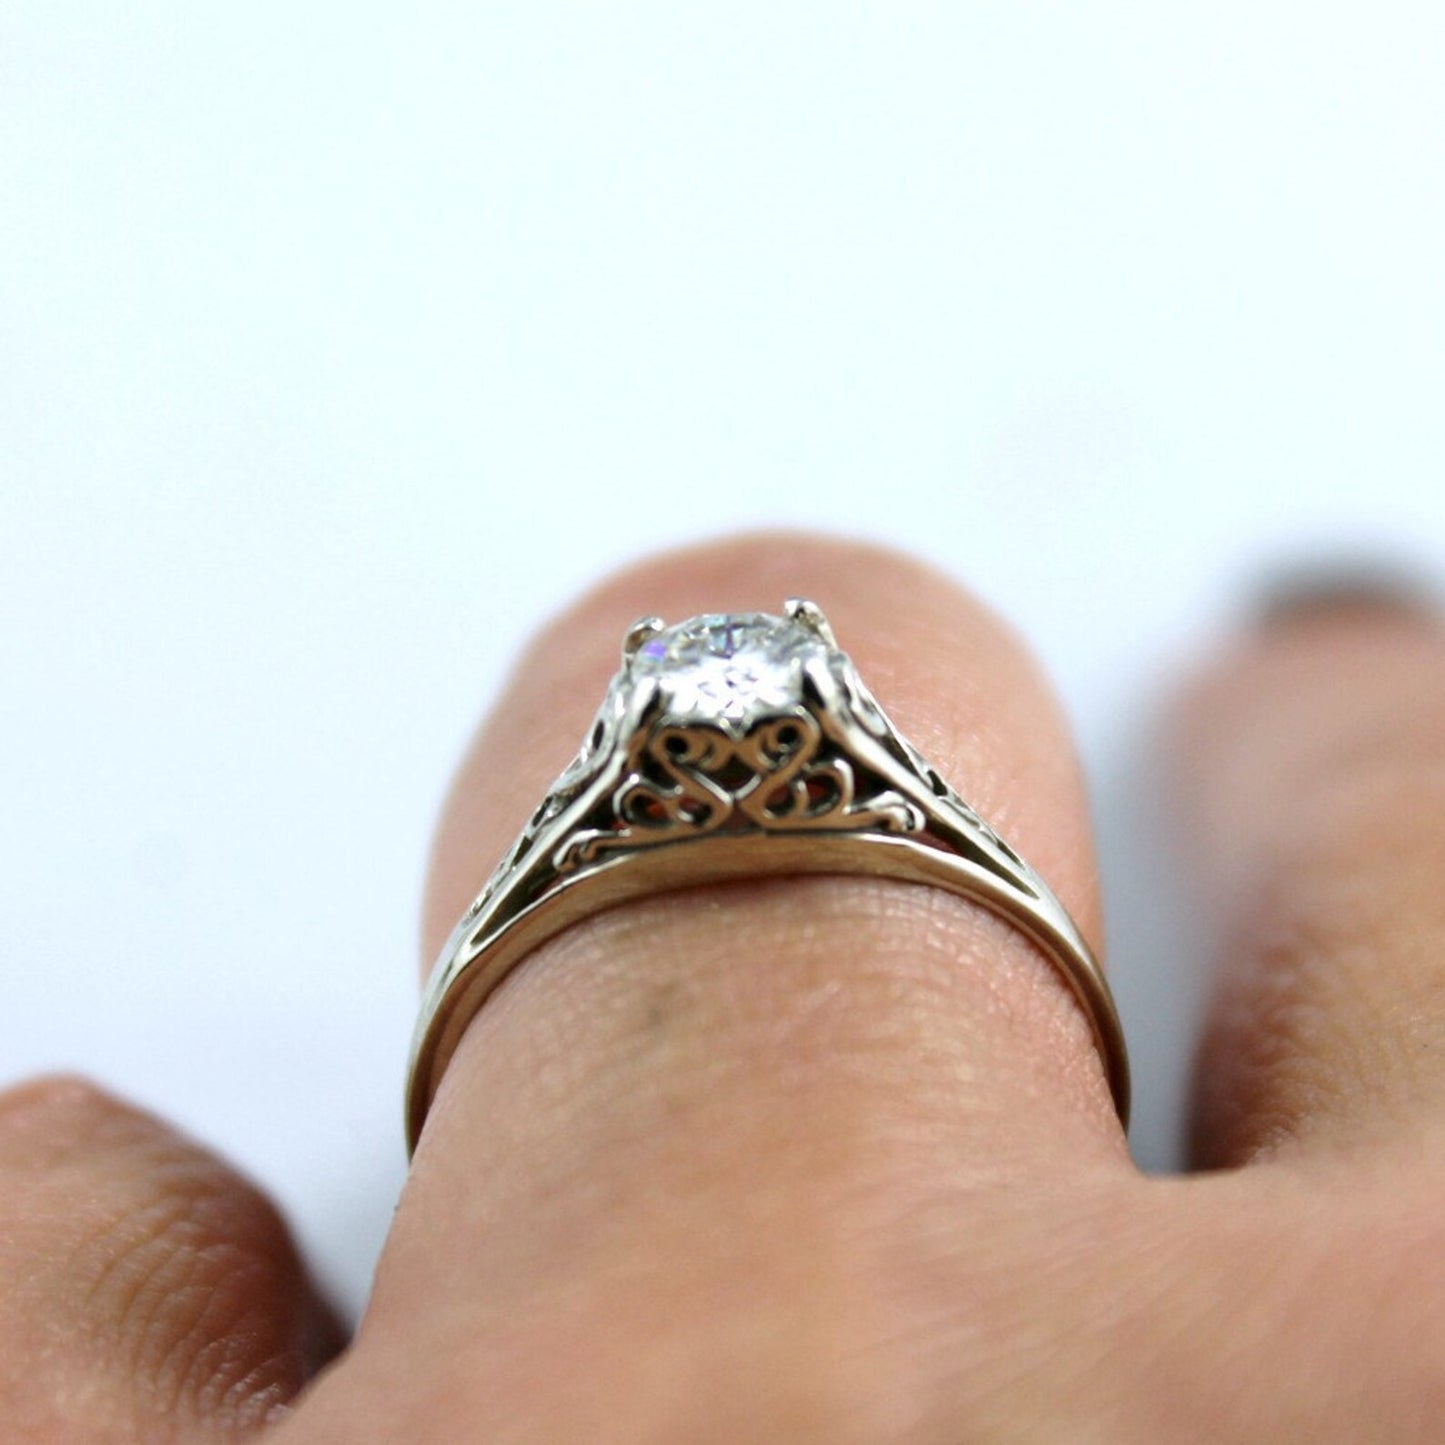 Moissanite Engagement Ring - 14K White Gold - Filigree Antique Style Ring - Forever Brilliant Moissanite - Alternative Diamond Rings